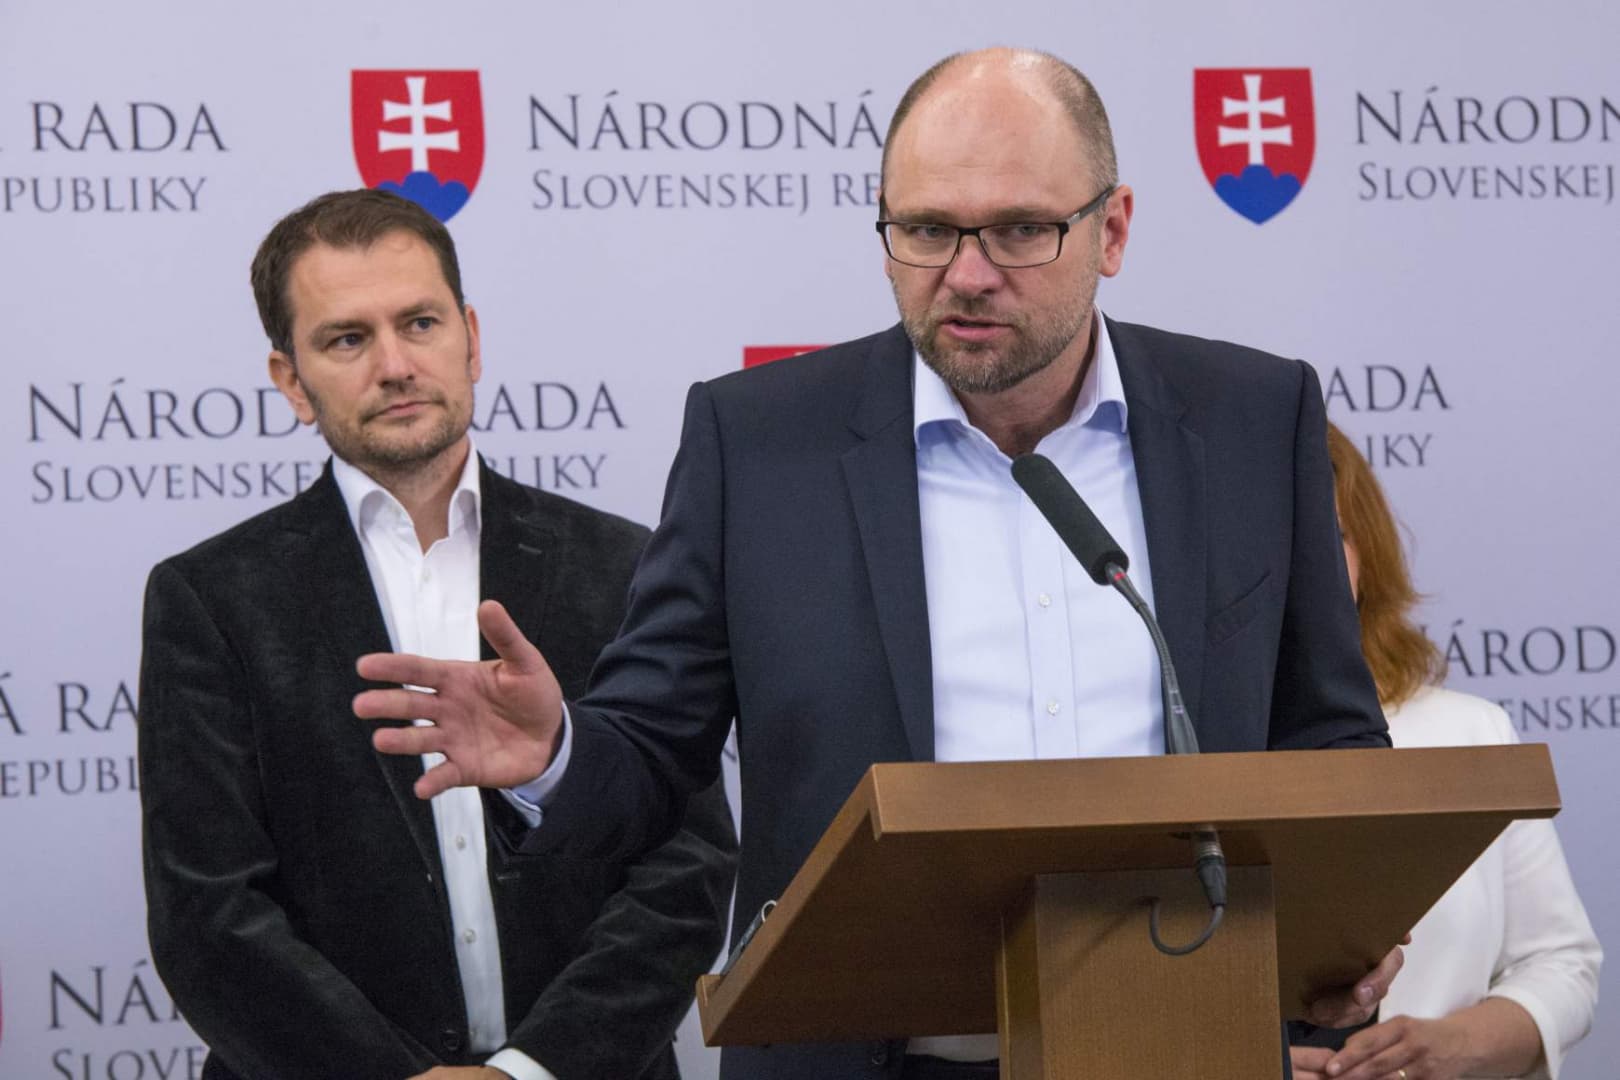 Távolodik az SaS a koalíciótól, Sulíkék arról tárgyalnak, hogy milyen feltételekkel maradnának - Matovič leváltása is játszik